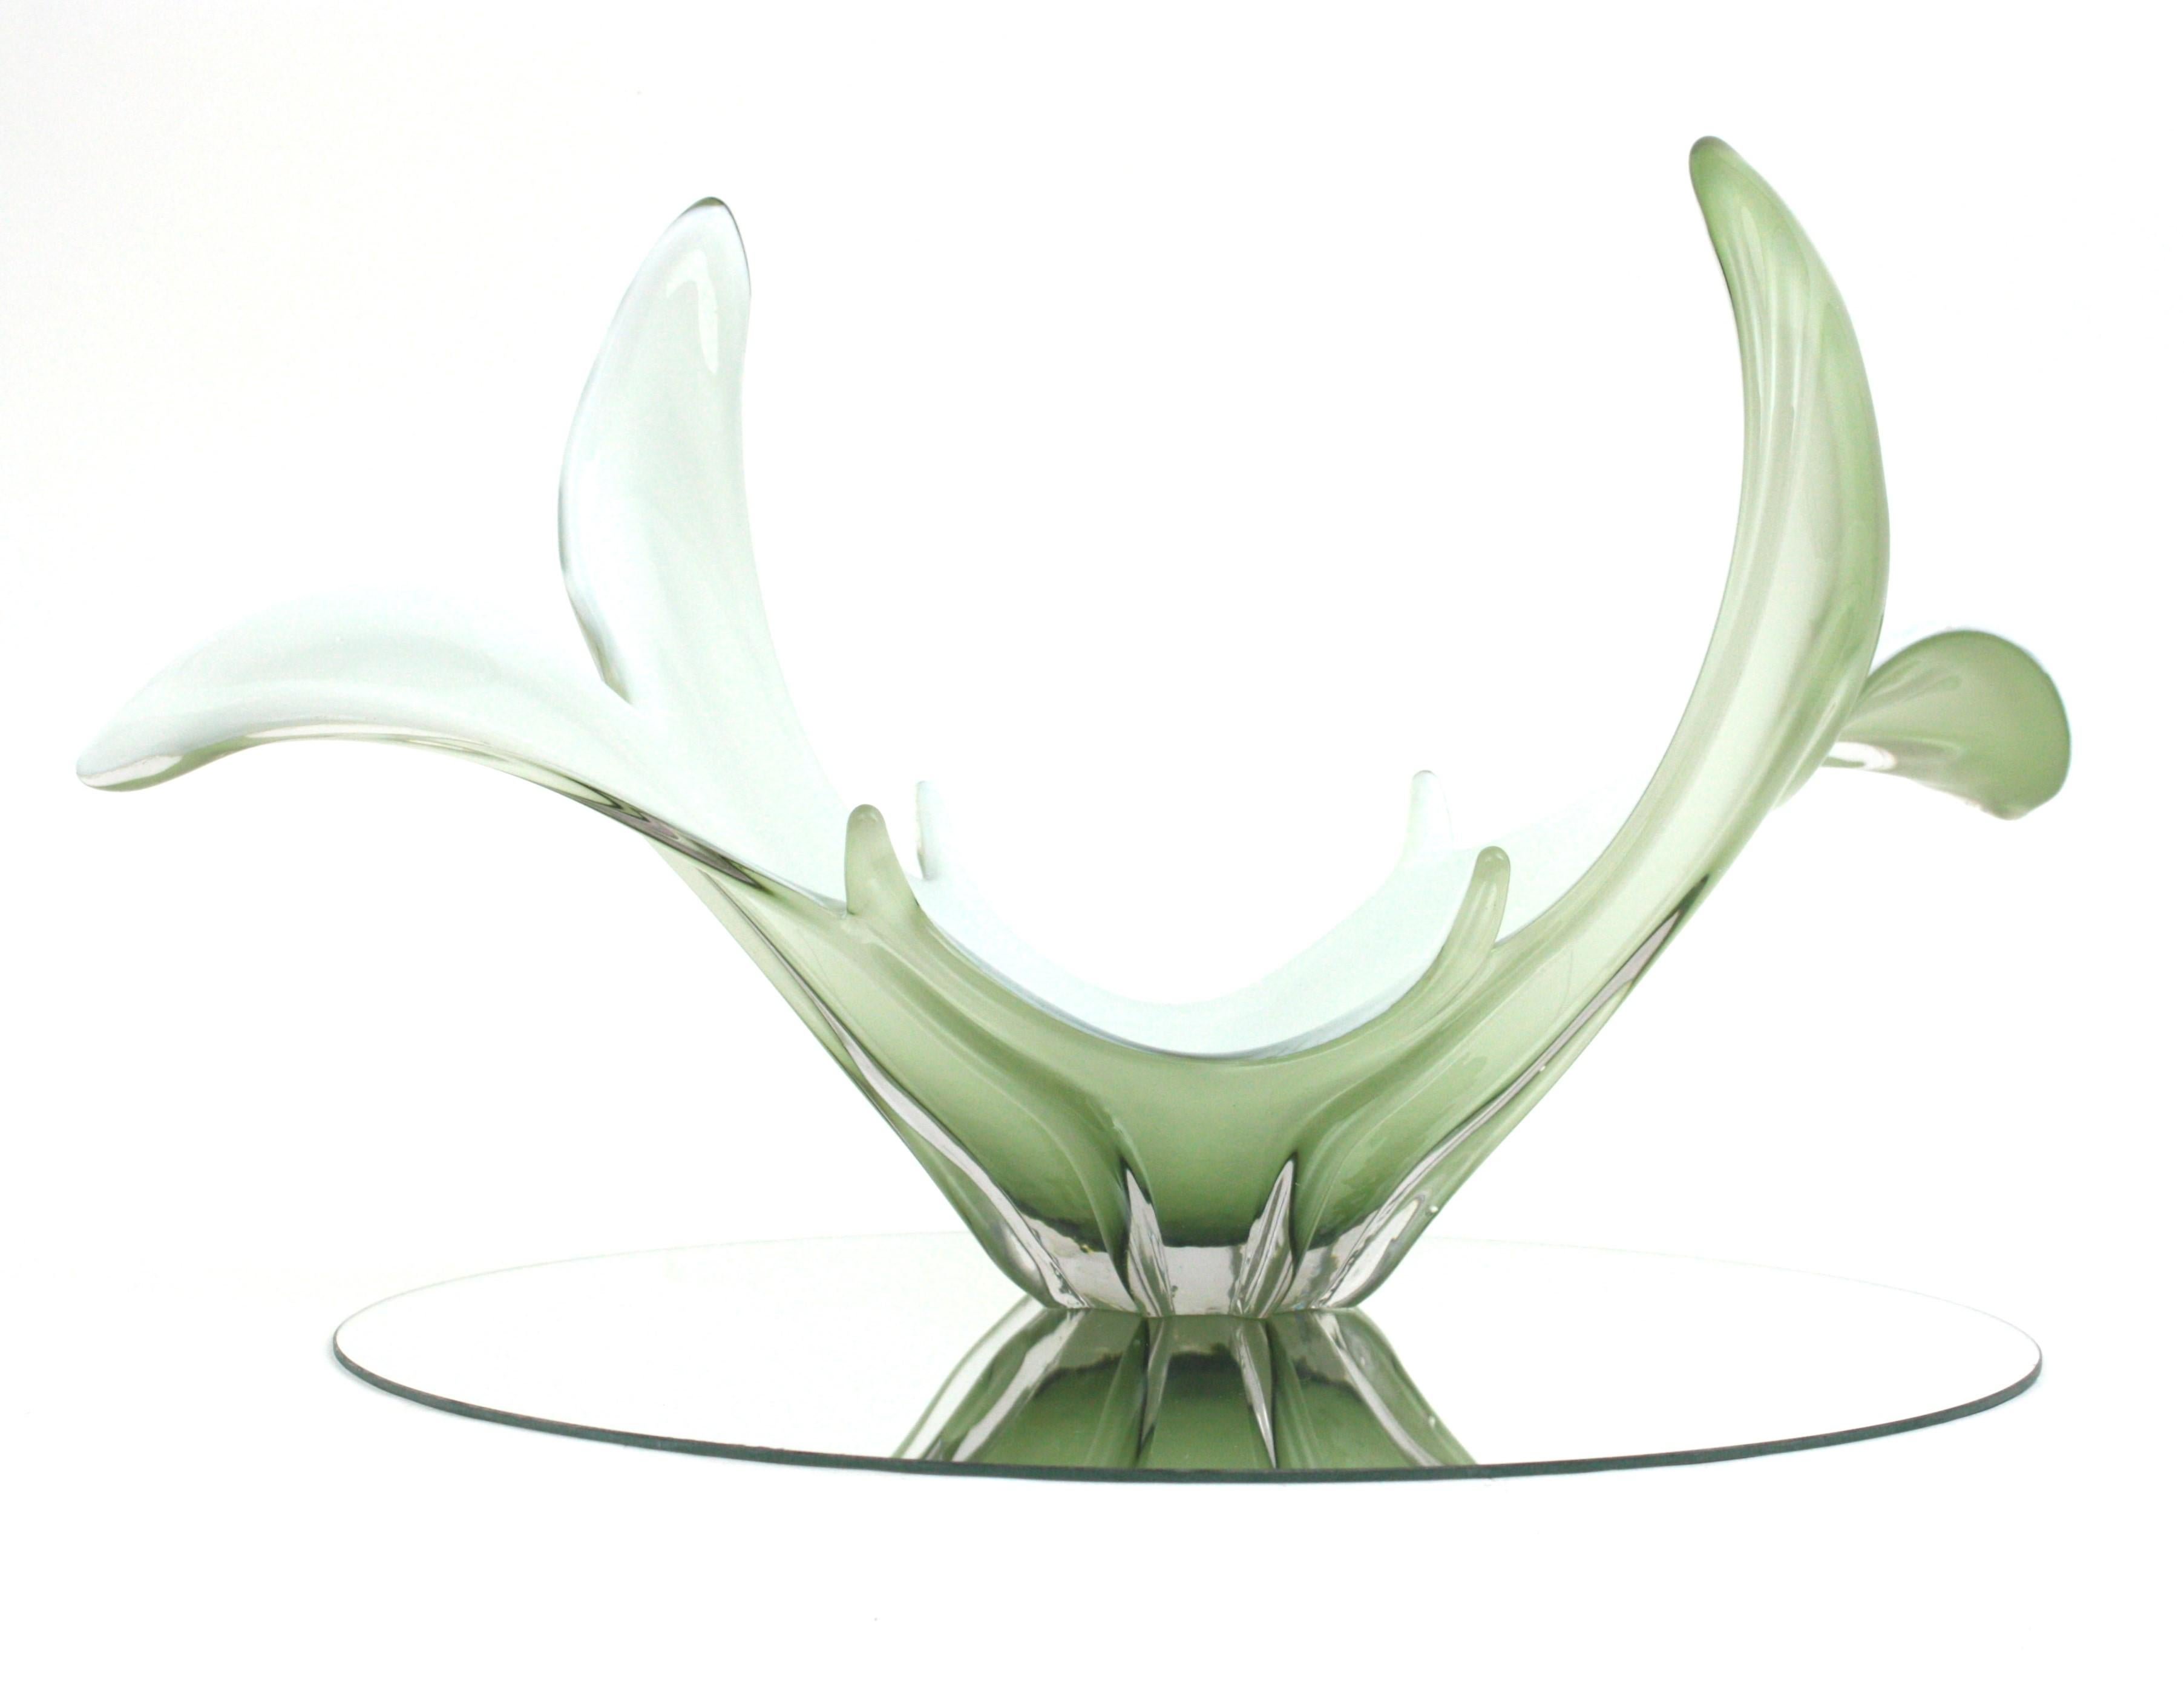 Ein hochdekorativer mundgeblasener Tafelaufsatz aus grünem und weißem Murano-Glas mit organischem Design. Italien, 1960er Jahre
Blassgrünes Glas in Klarglas eingeschlossen. Der Innenteil ist aus weißem Opalglas gefertigt.
Es ist eine gute Wahl für